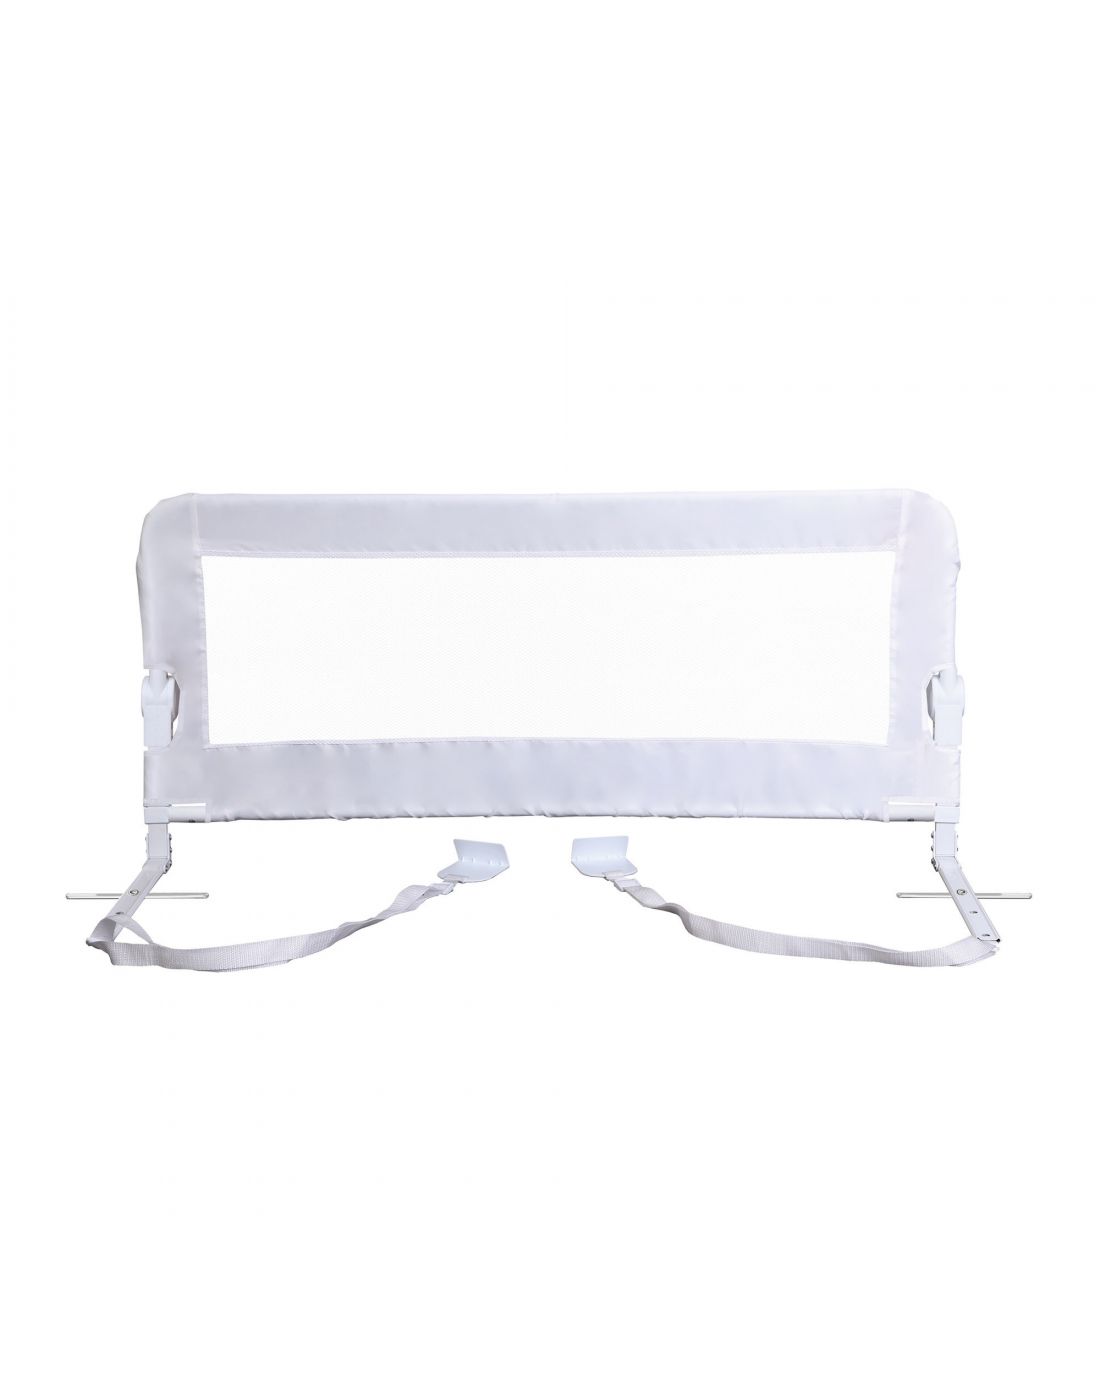 Παιδικό Προστατευτικό Κάγκελο Κρεβατιού DreamBaby White 110*50cm